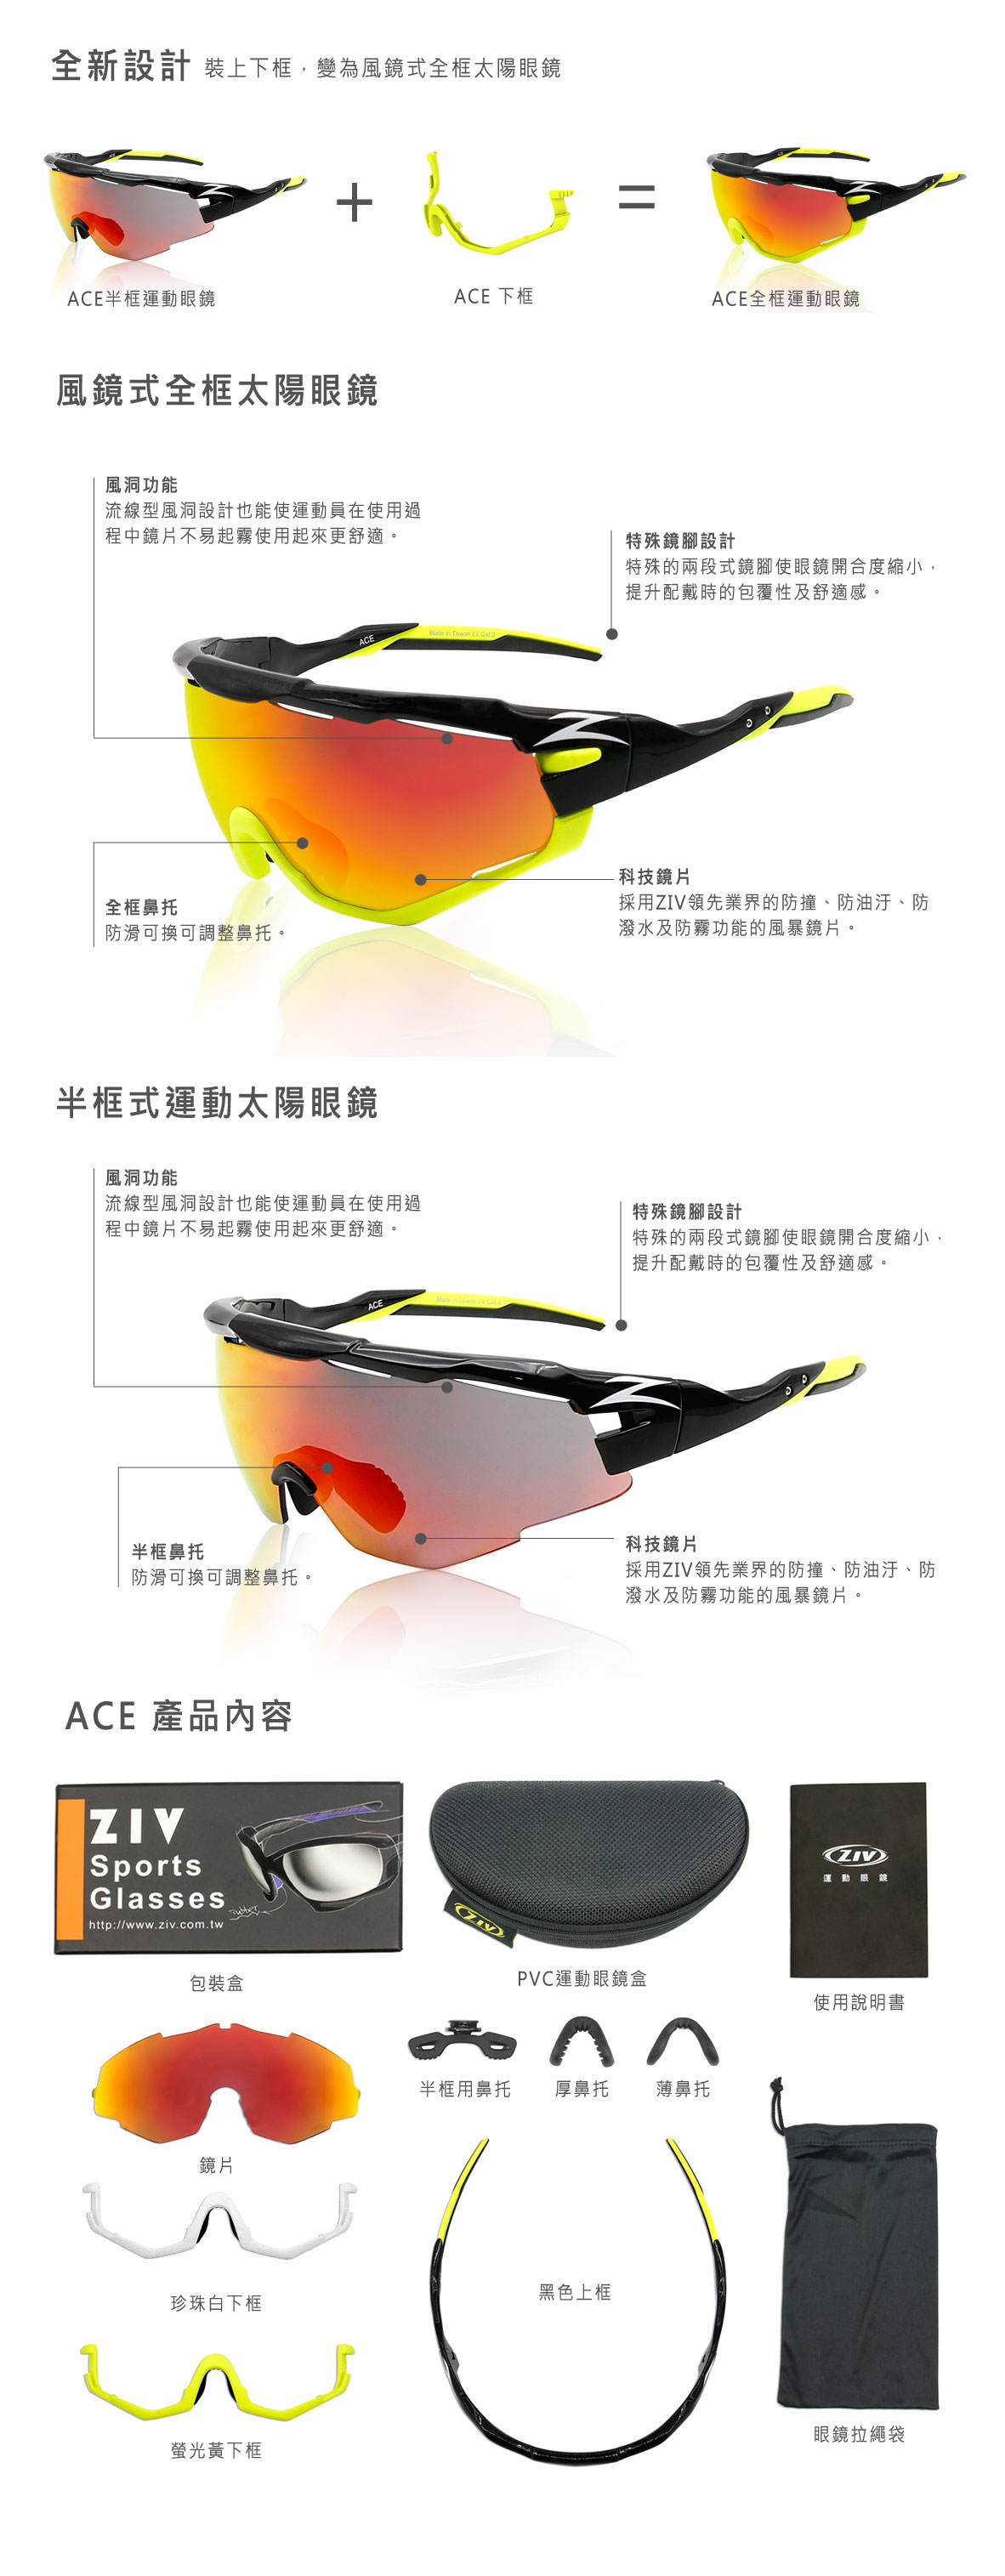 ZIV運動眼鏡,ACE眼鏡說明, ACE, ZIV太陽眼鏡